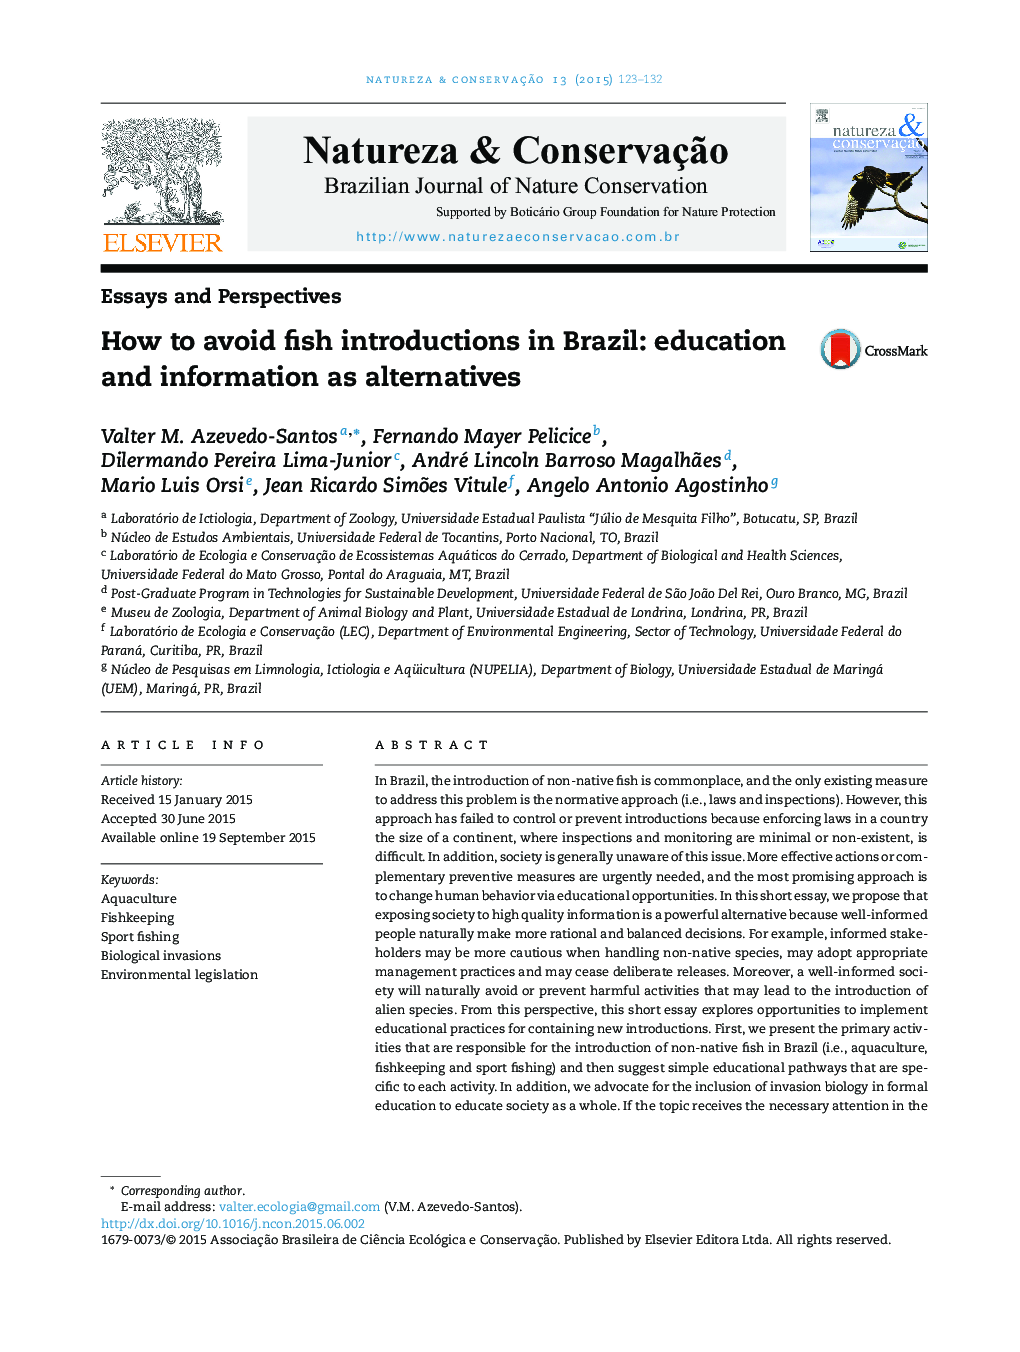 چگونگی اجتناب از معرفی ماهی در برزیل: آموزش و اطلاعات به عنوان جایگزین 